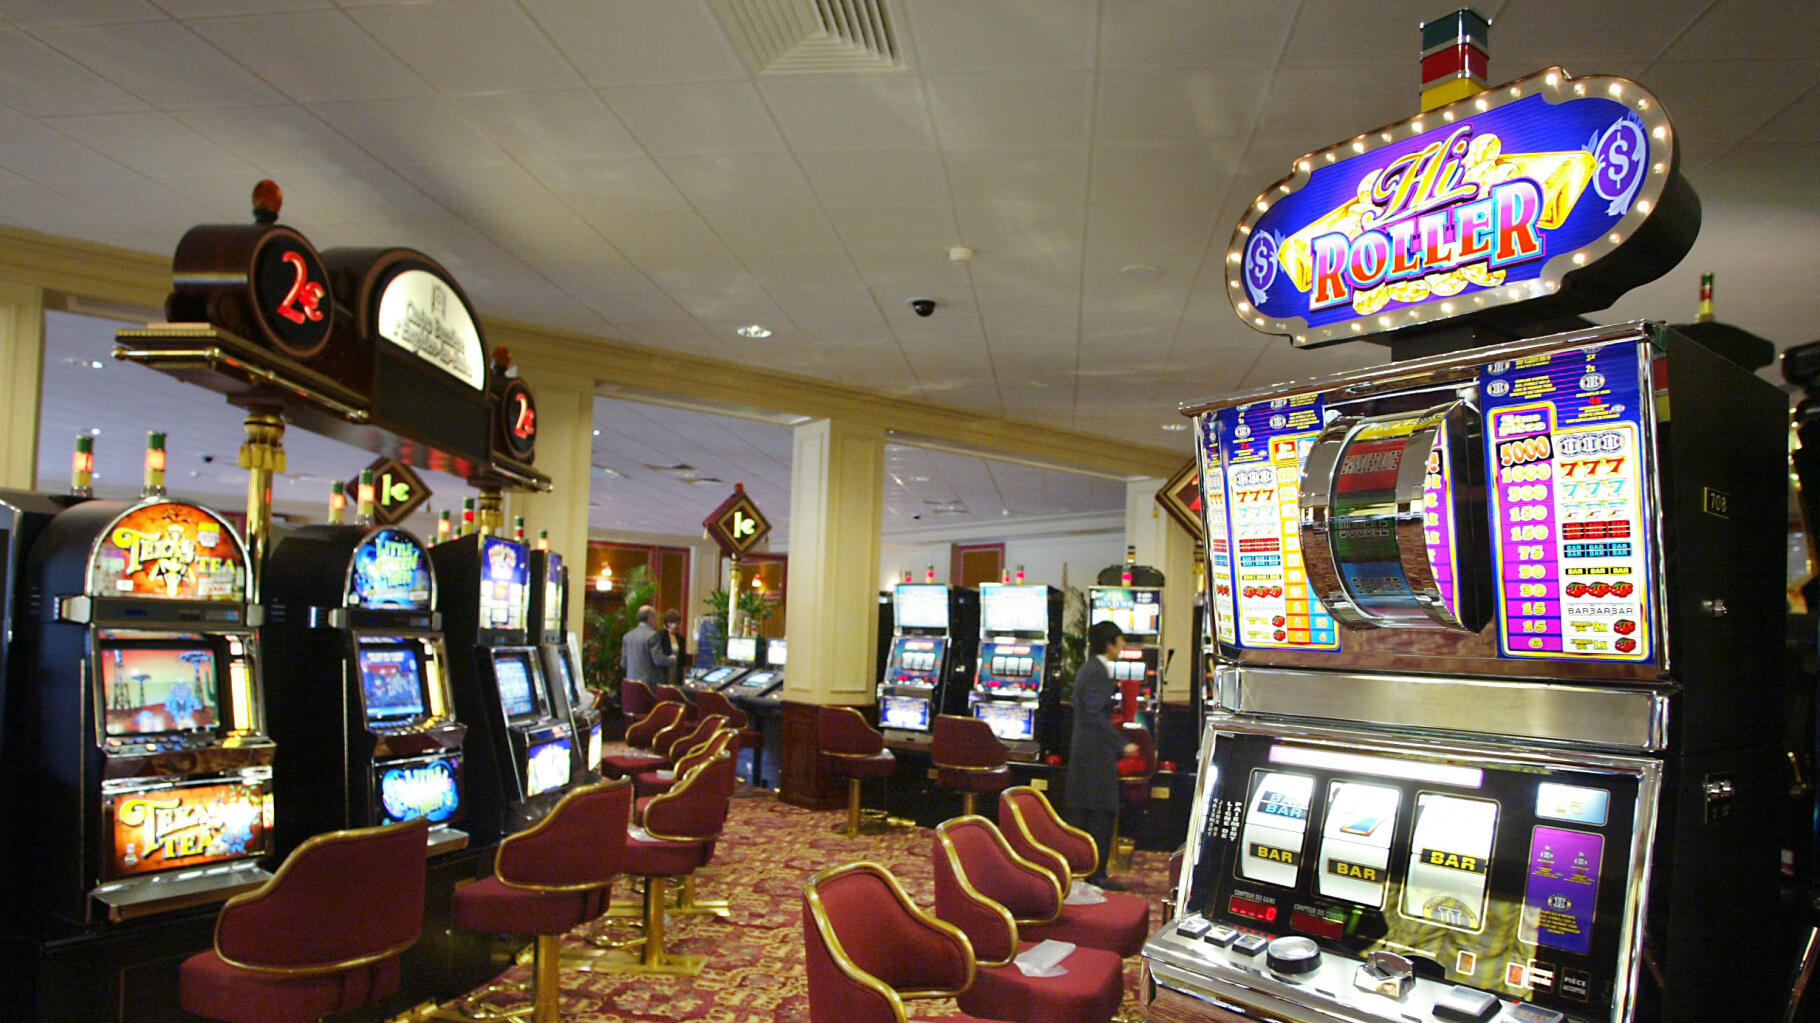 Le casino d'Enghien mise sur les jeux chinois